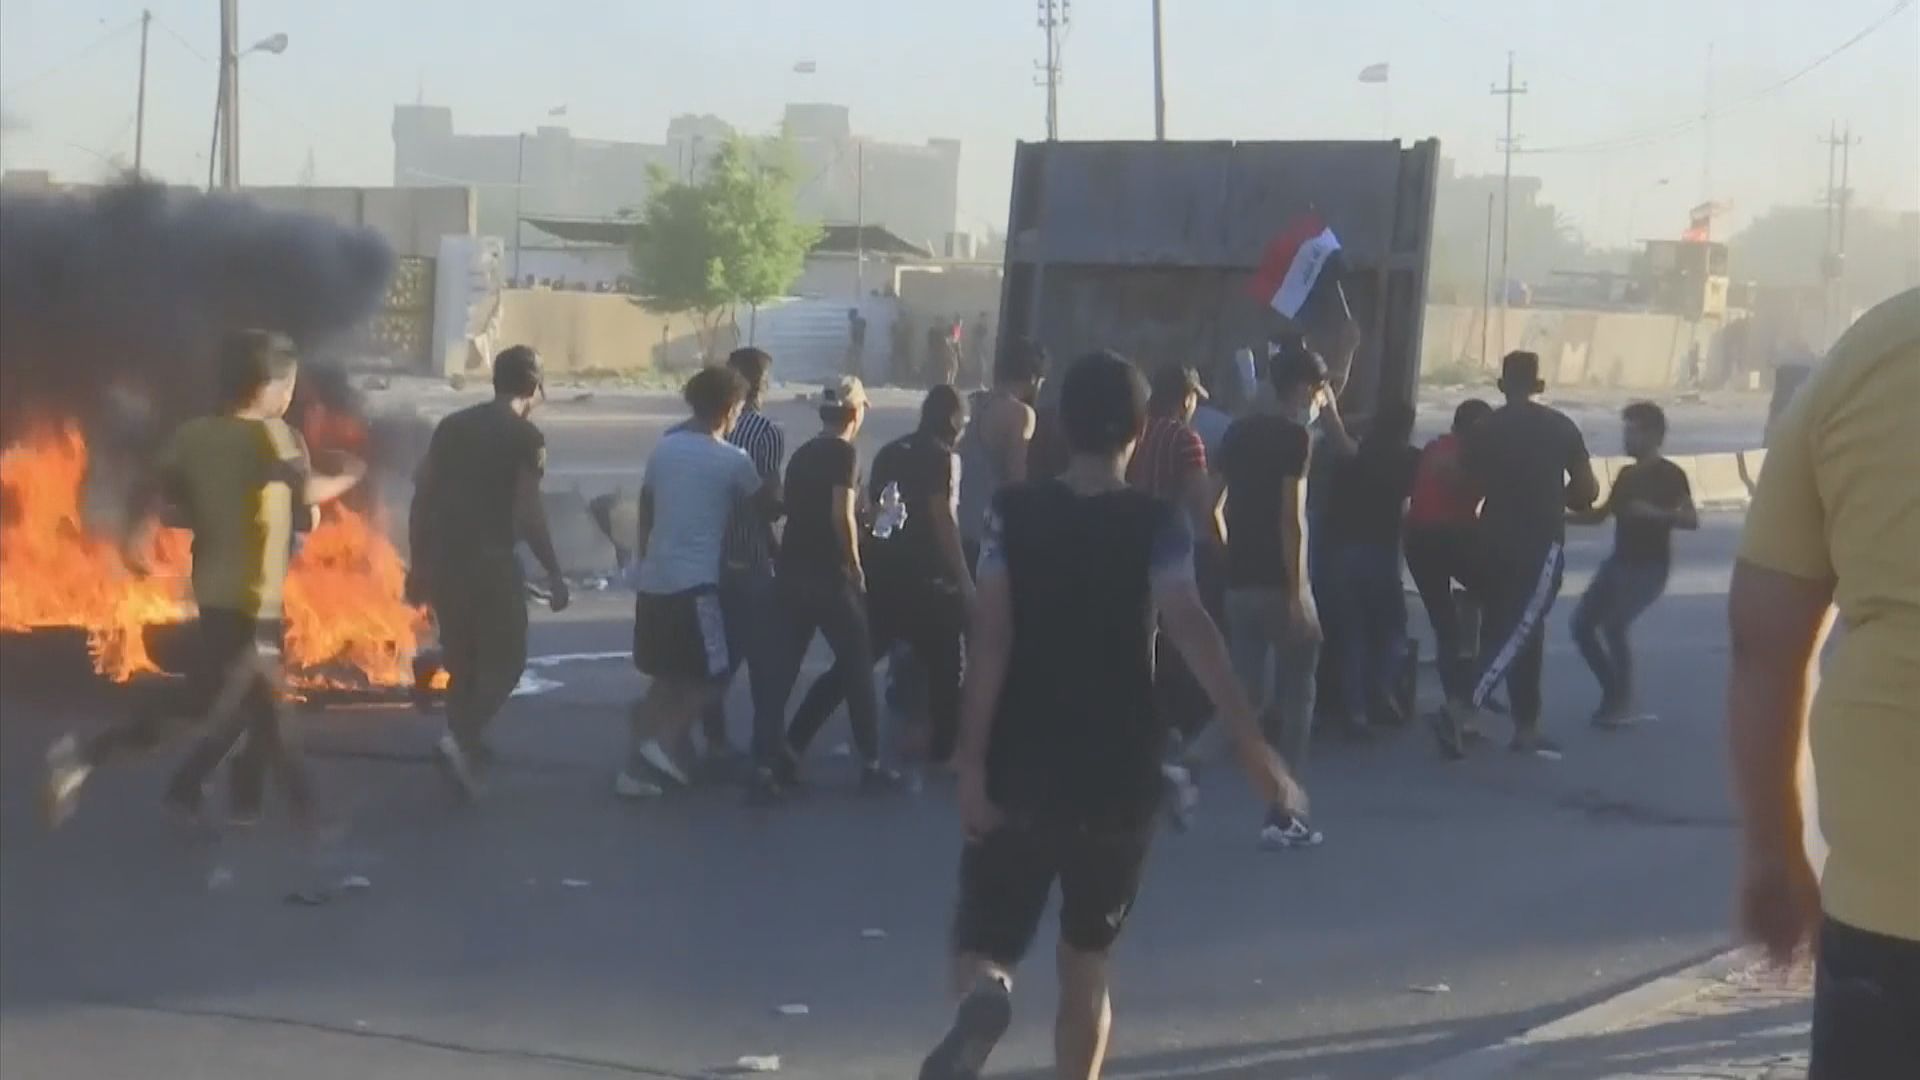 伊拉克反政府示威至少造成70人死亡